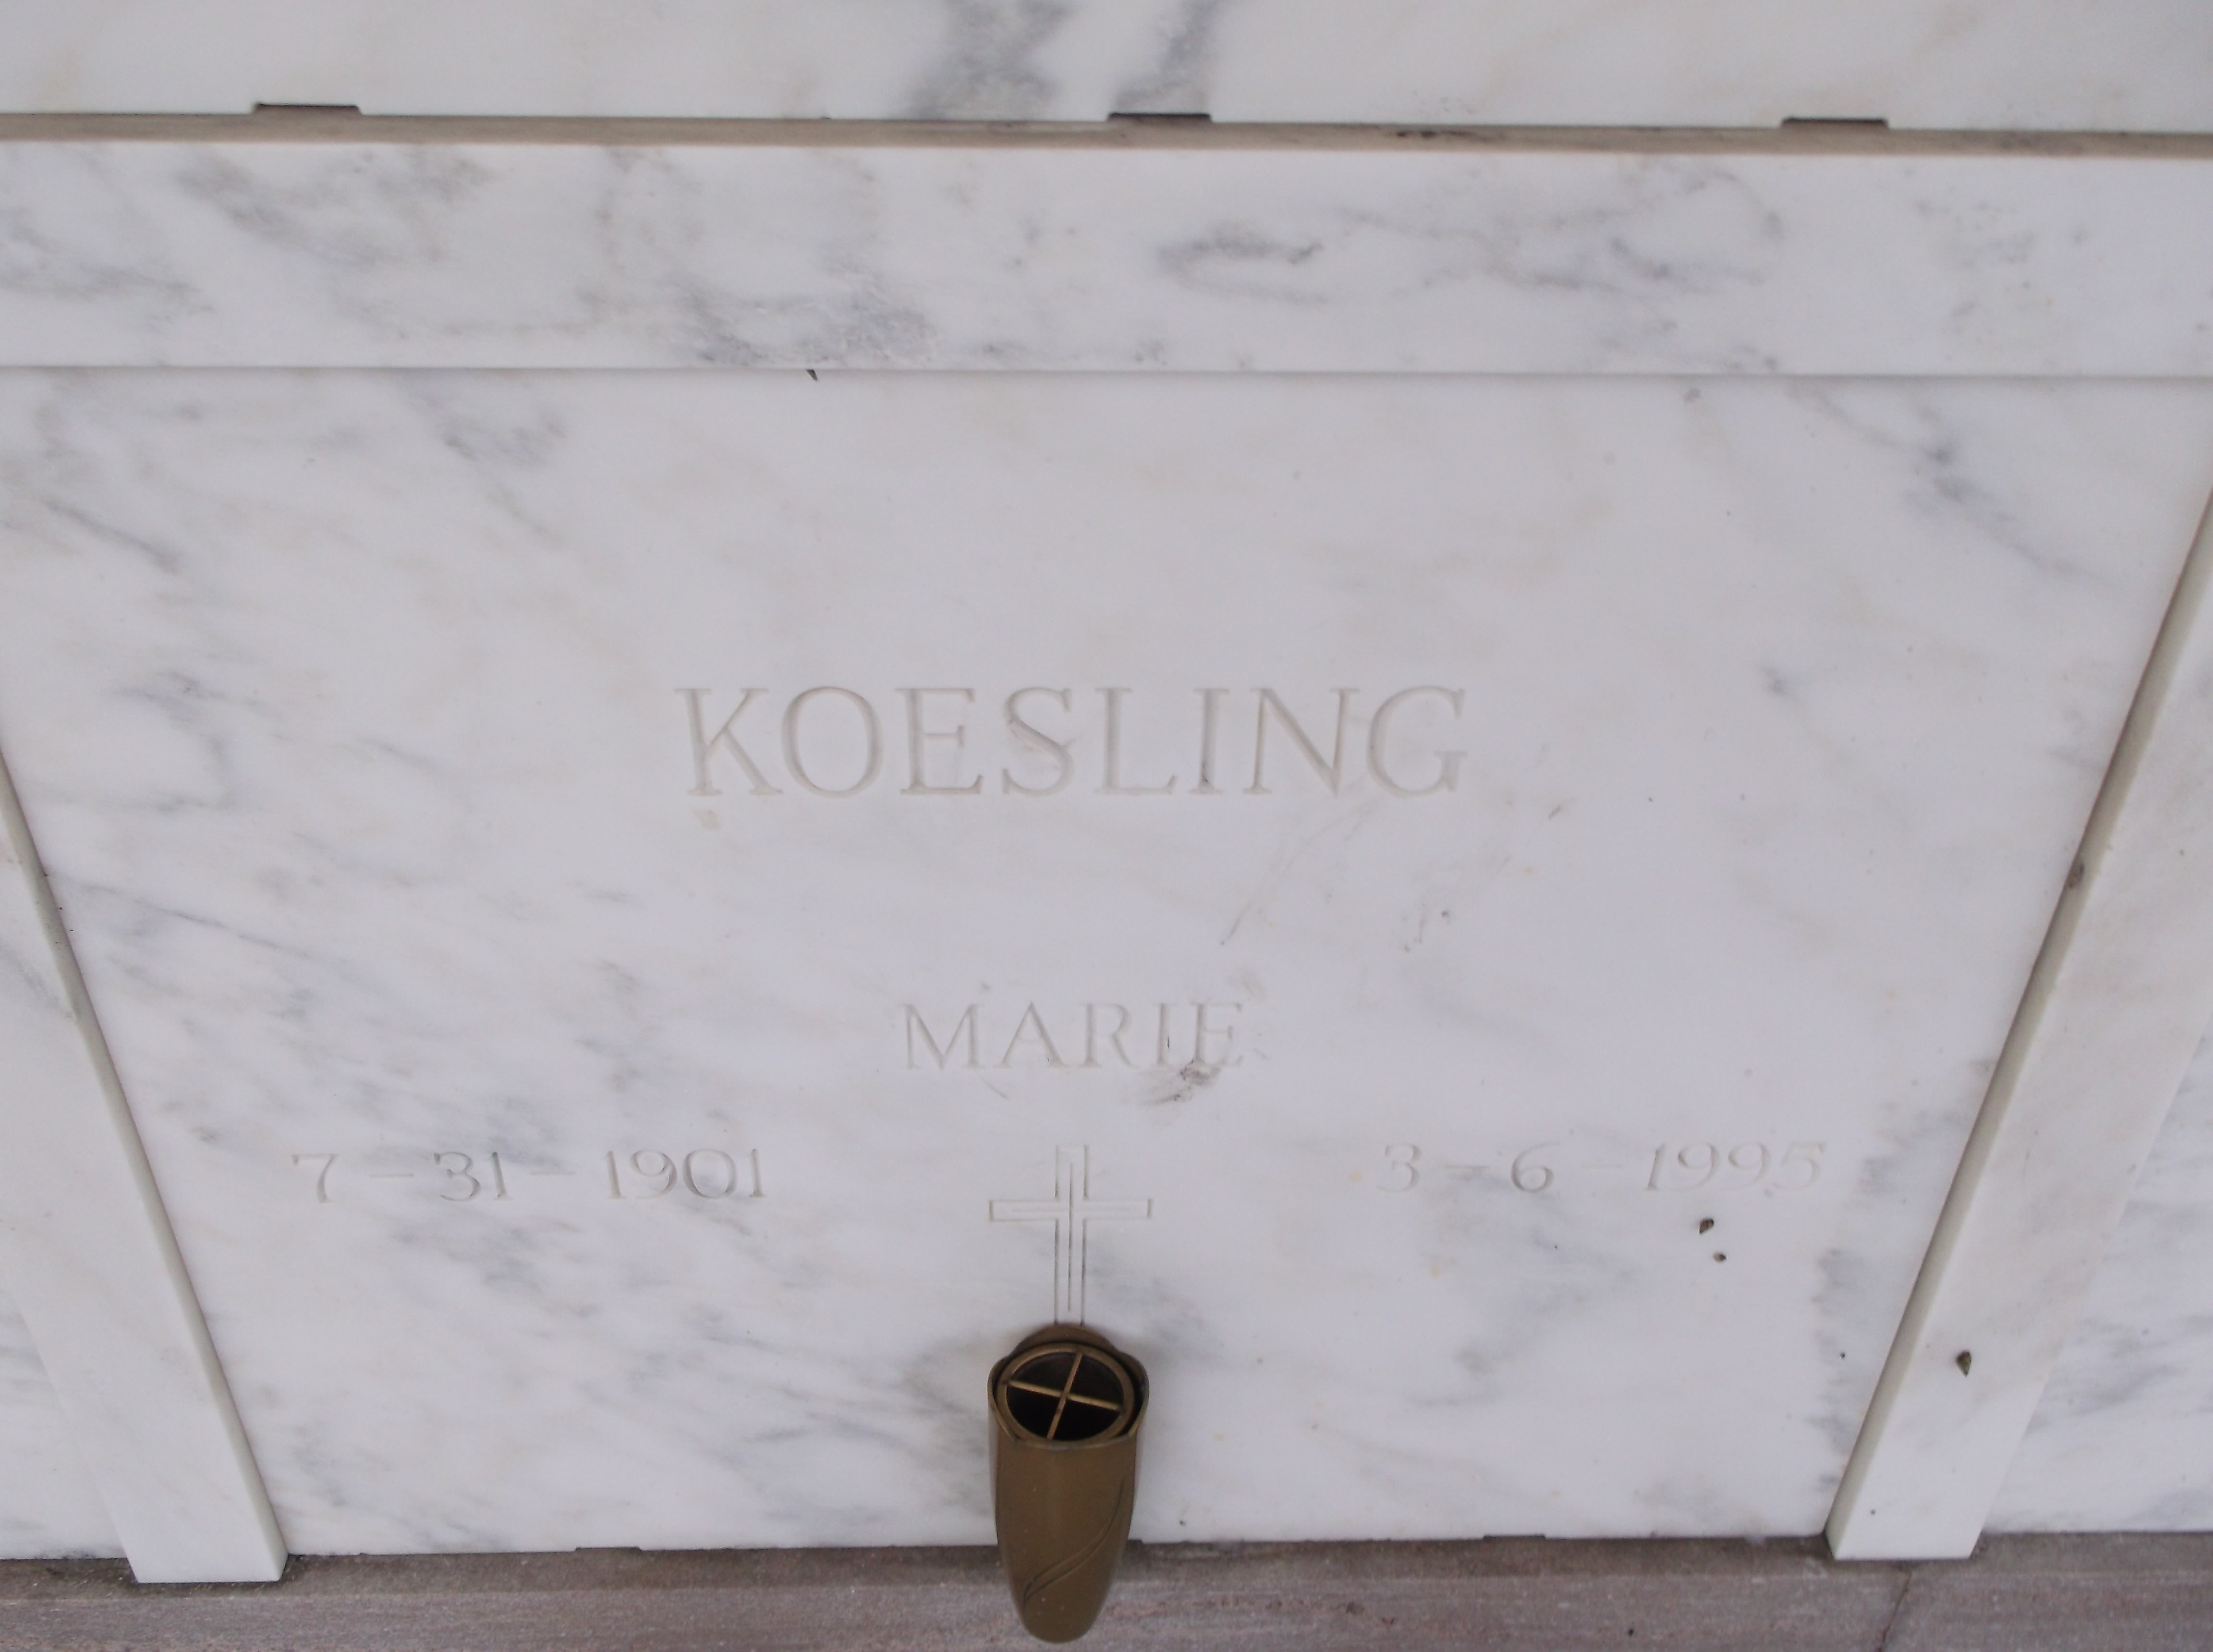 Marie Koesling